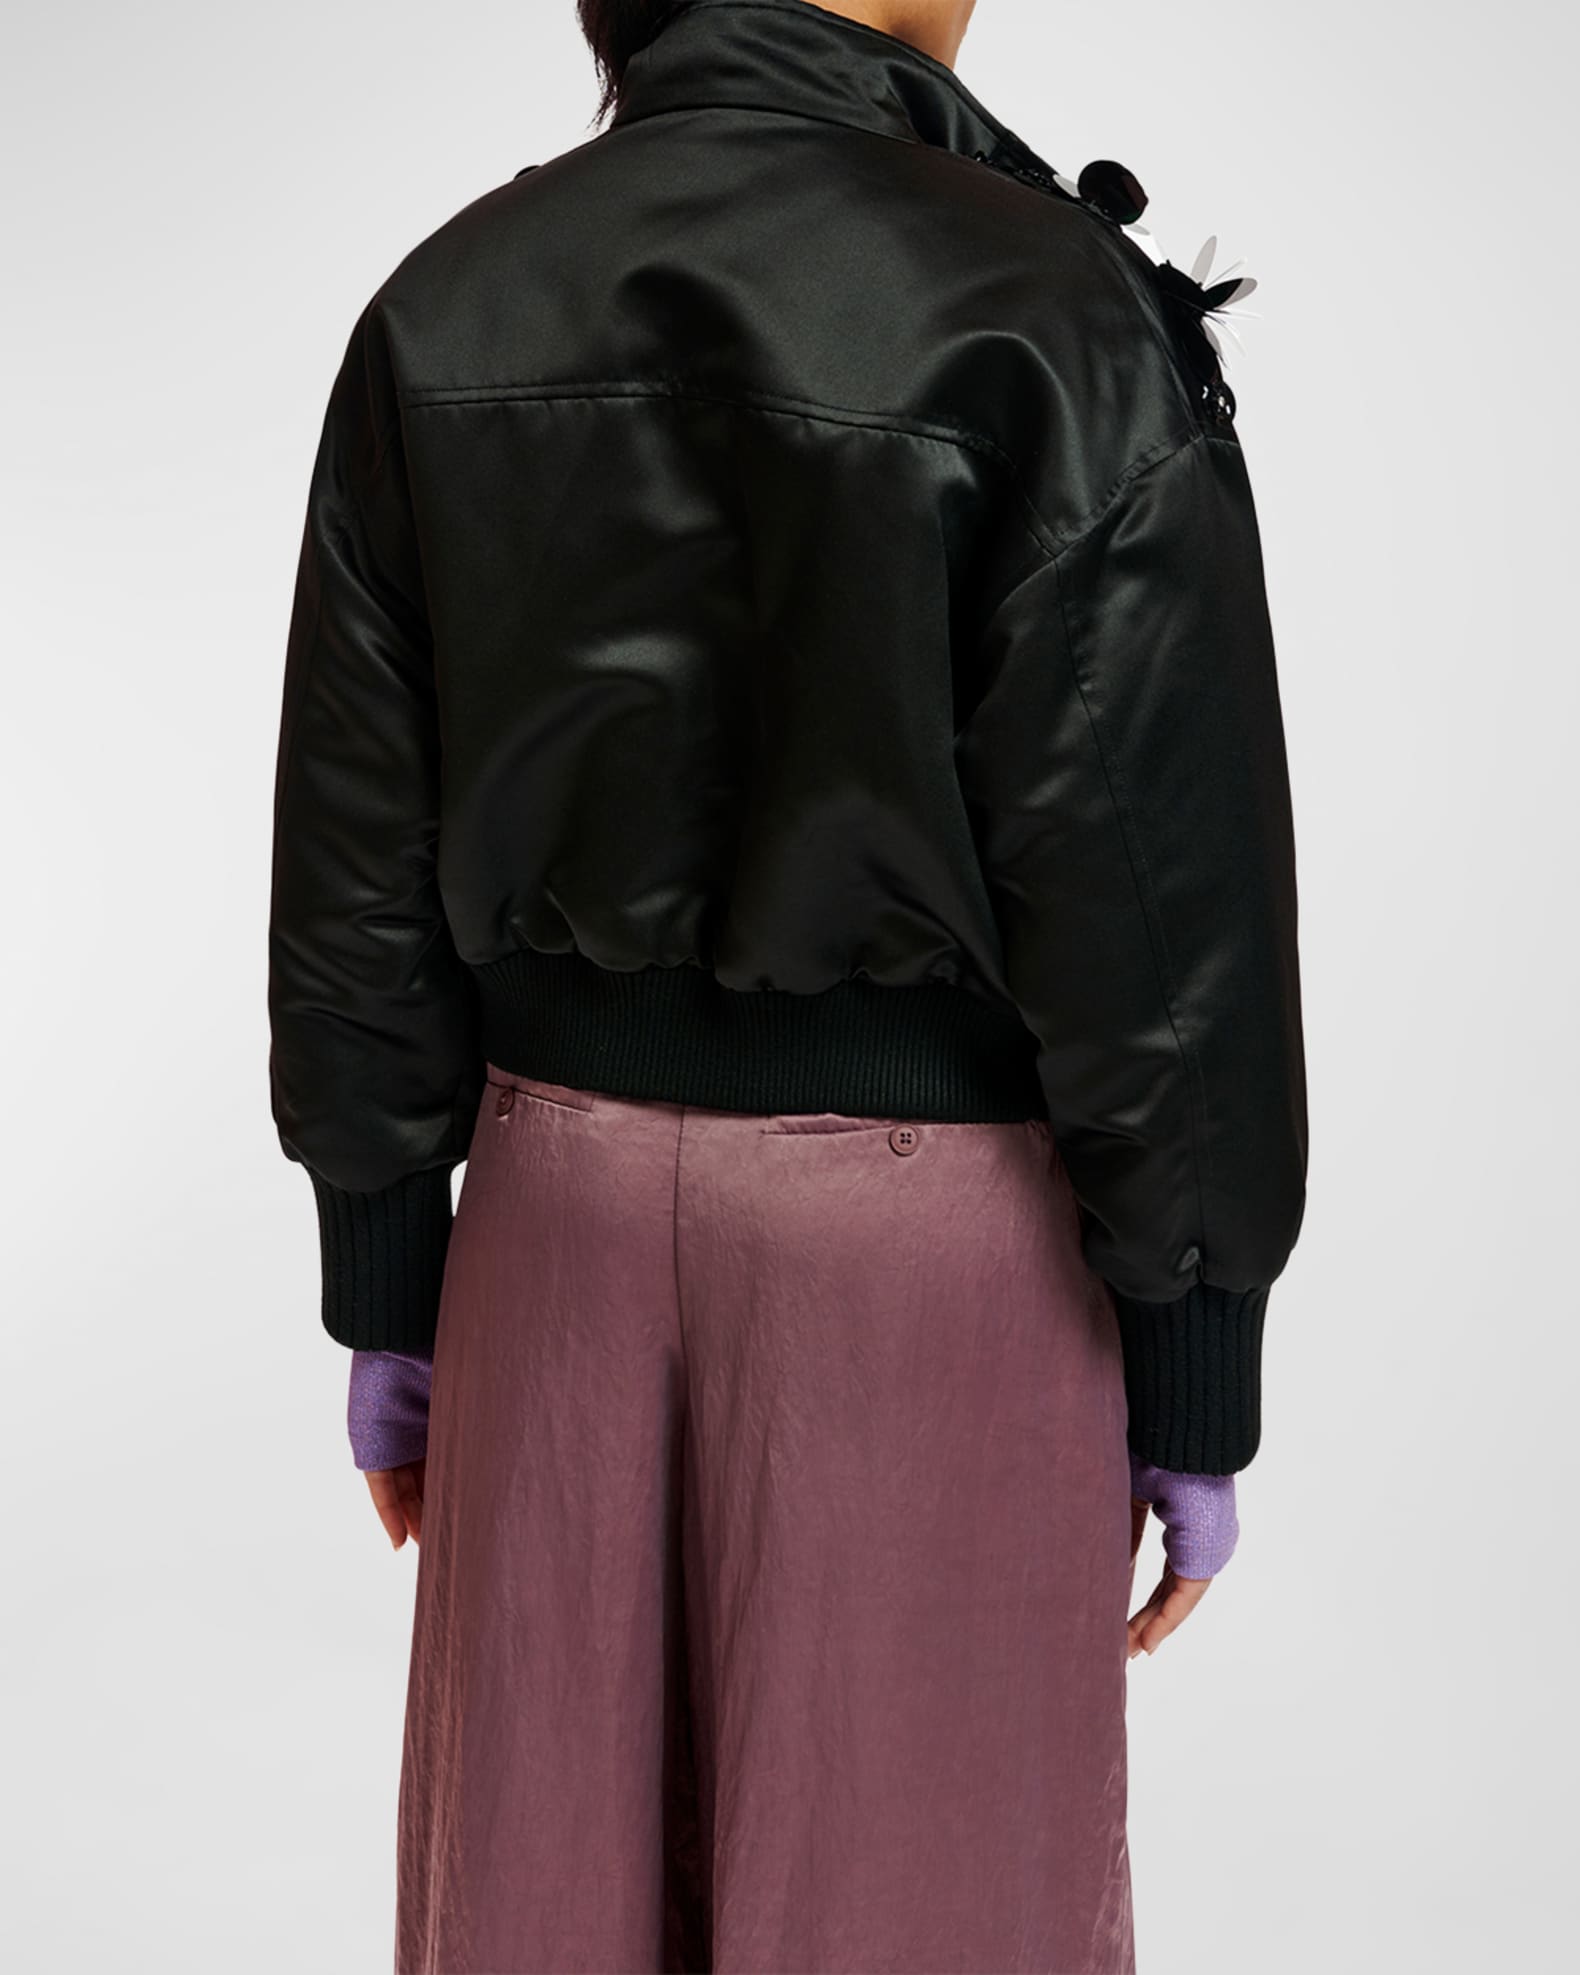 Essentiel Antwerp Erobo Sequin Embroidered Bomber Jacket | Neiman Marcus